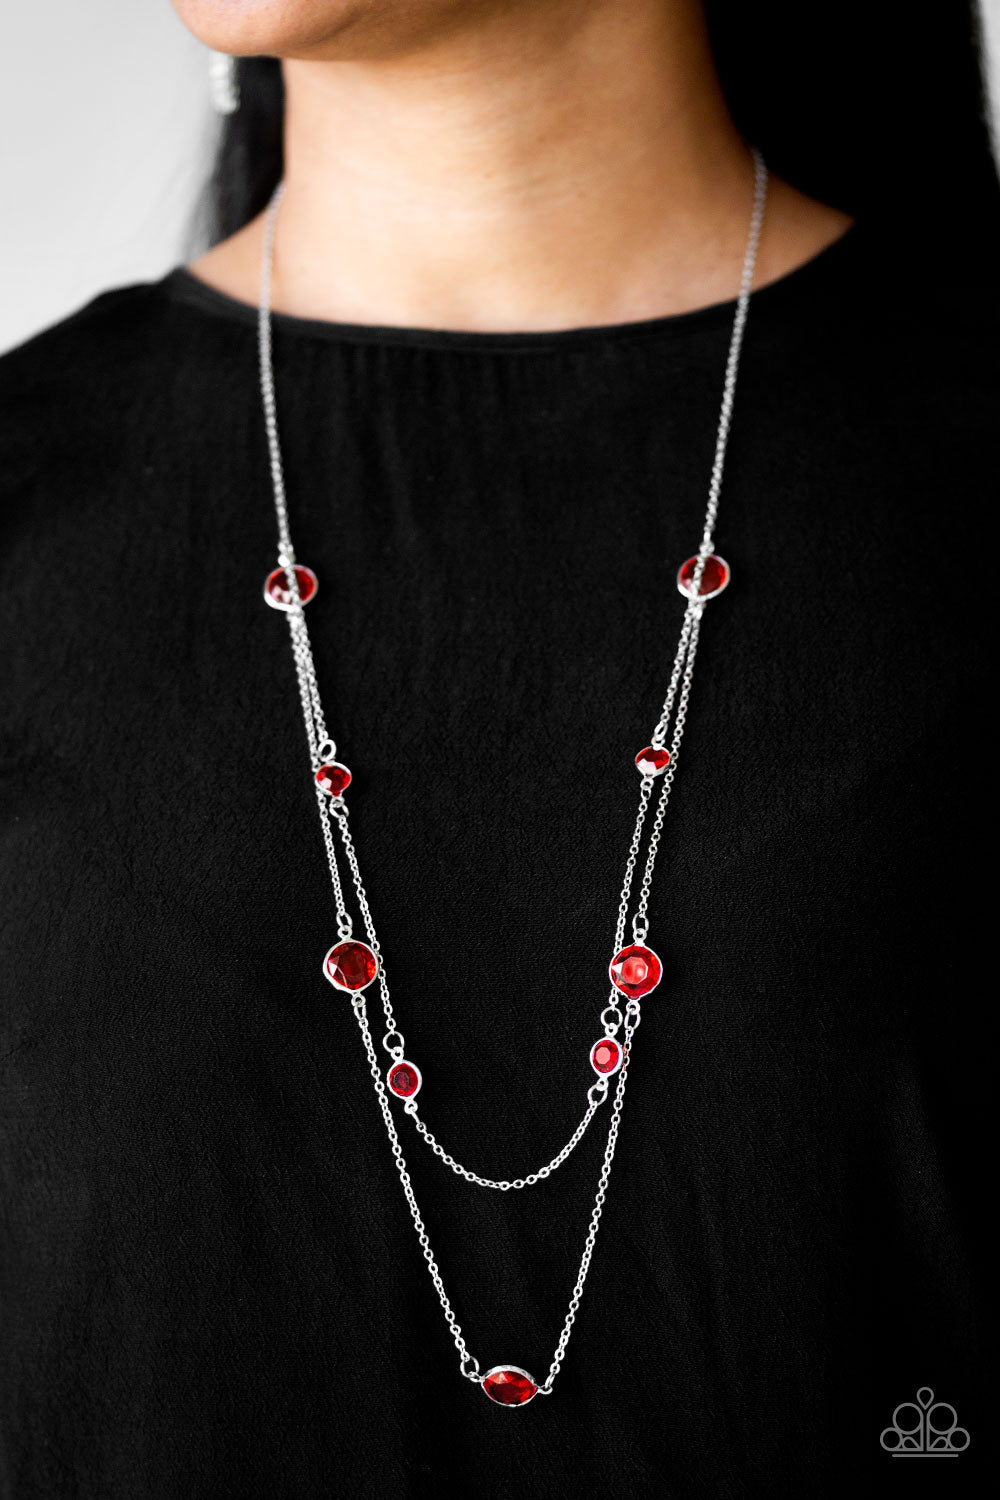 Paparazzi: Goddess Glow - Red Necklace | eBay